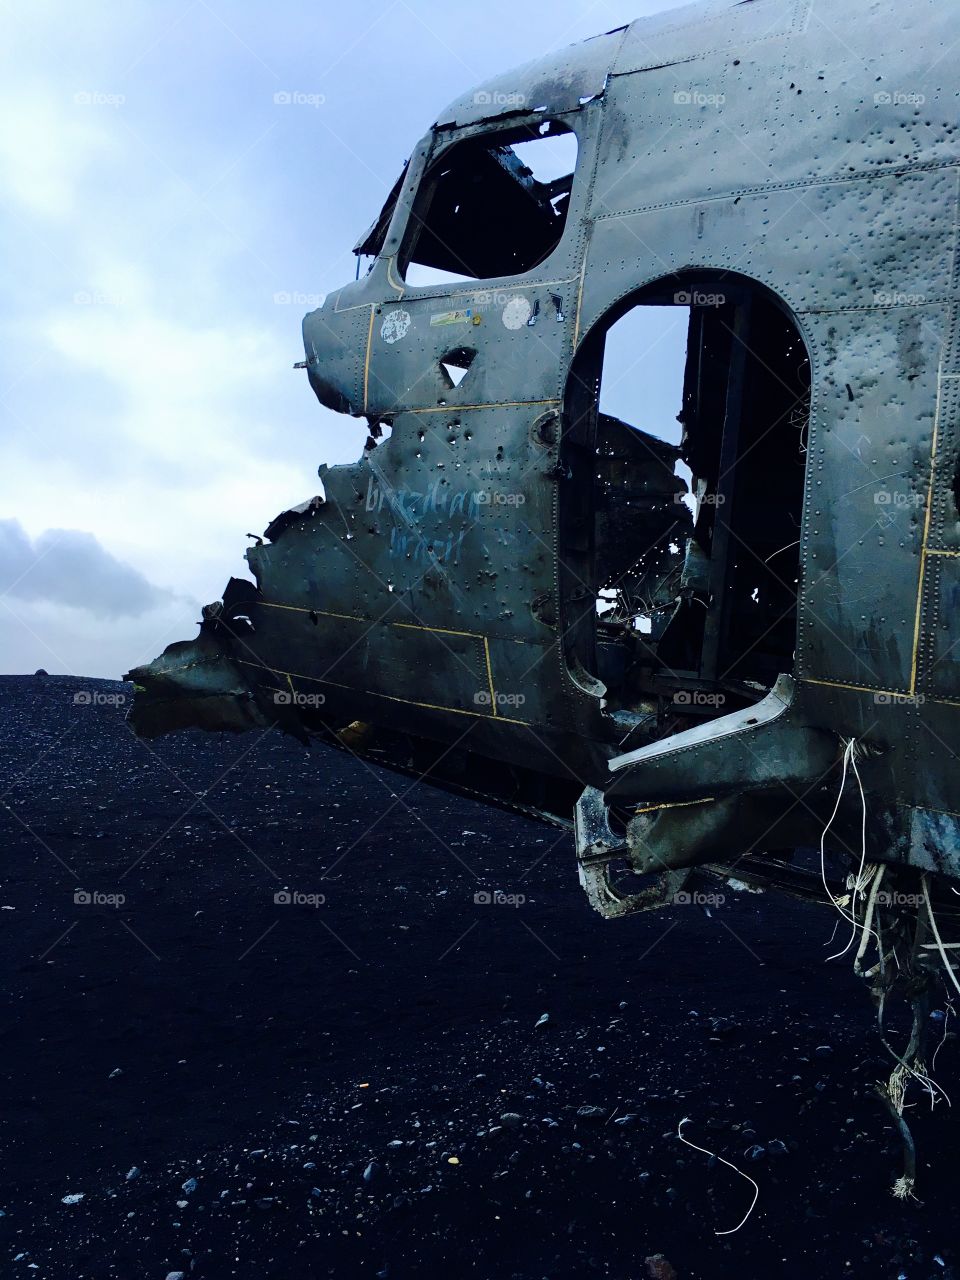 Plane wreck in Iceland  - Sólheimasandur black sand beach